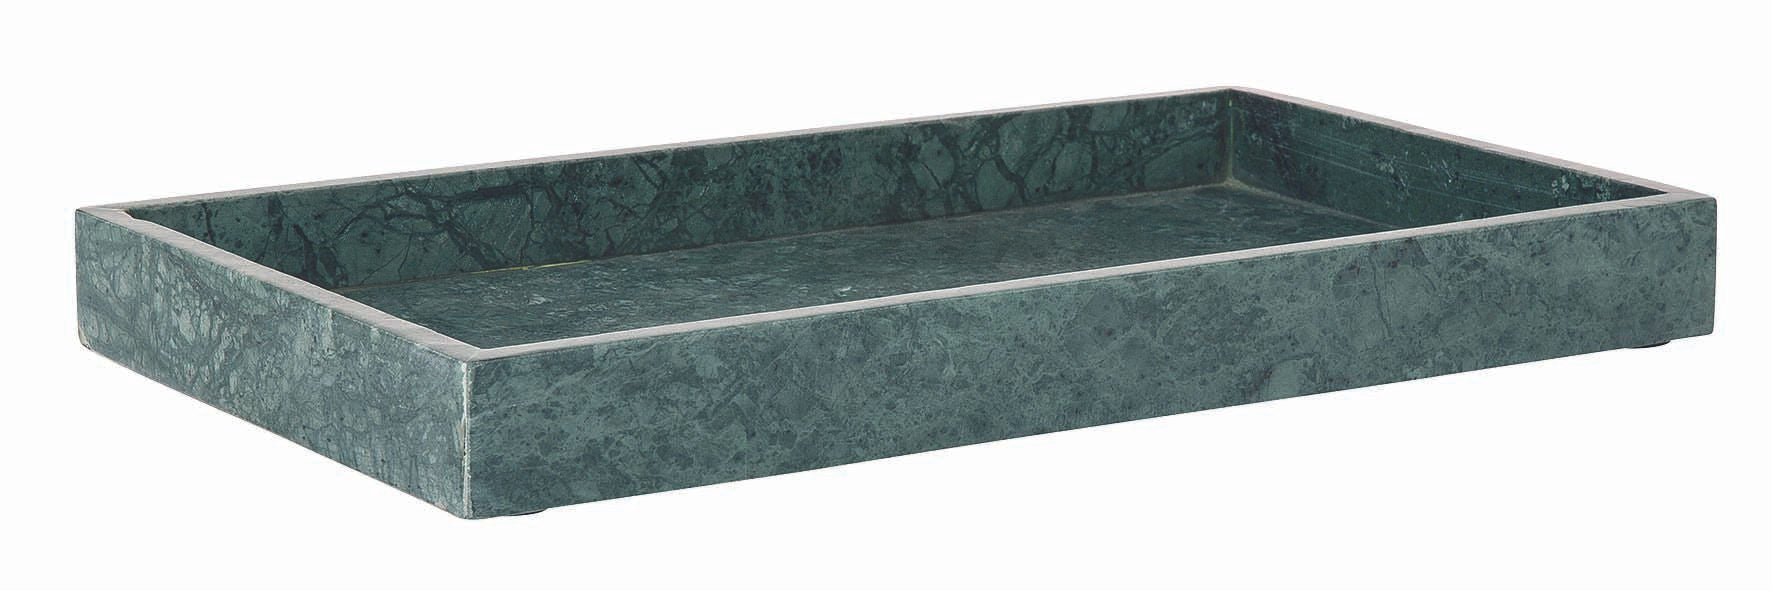 Bakke i marmor, 40x22 cm - grøn • Bahne